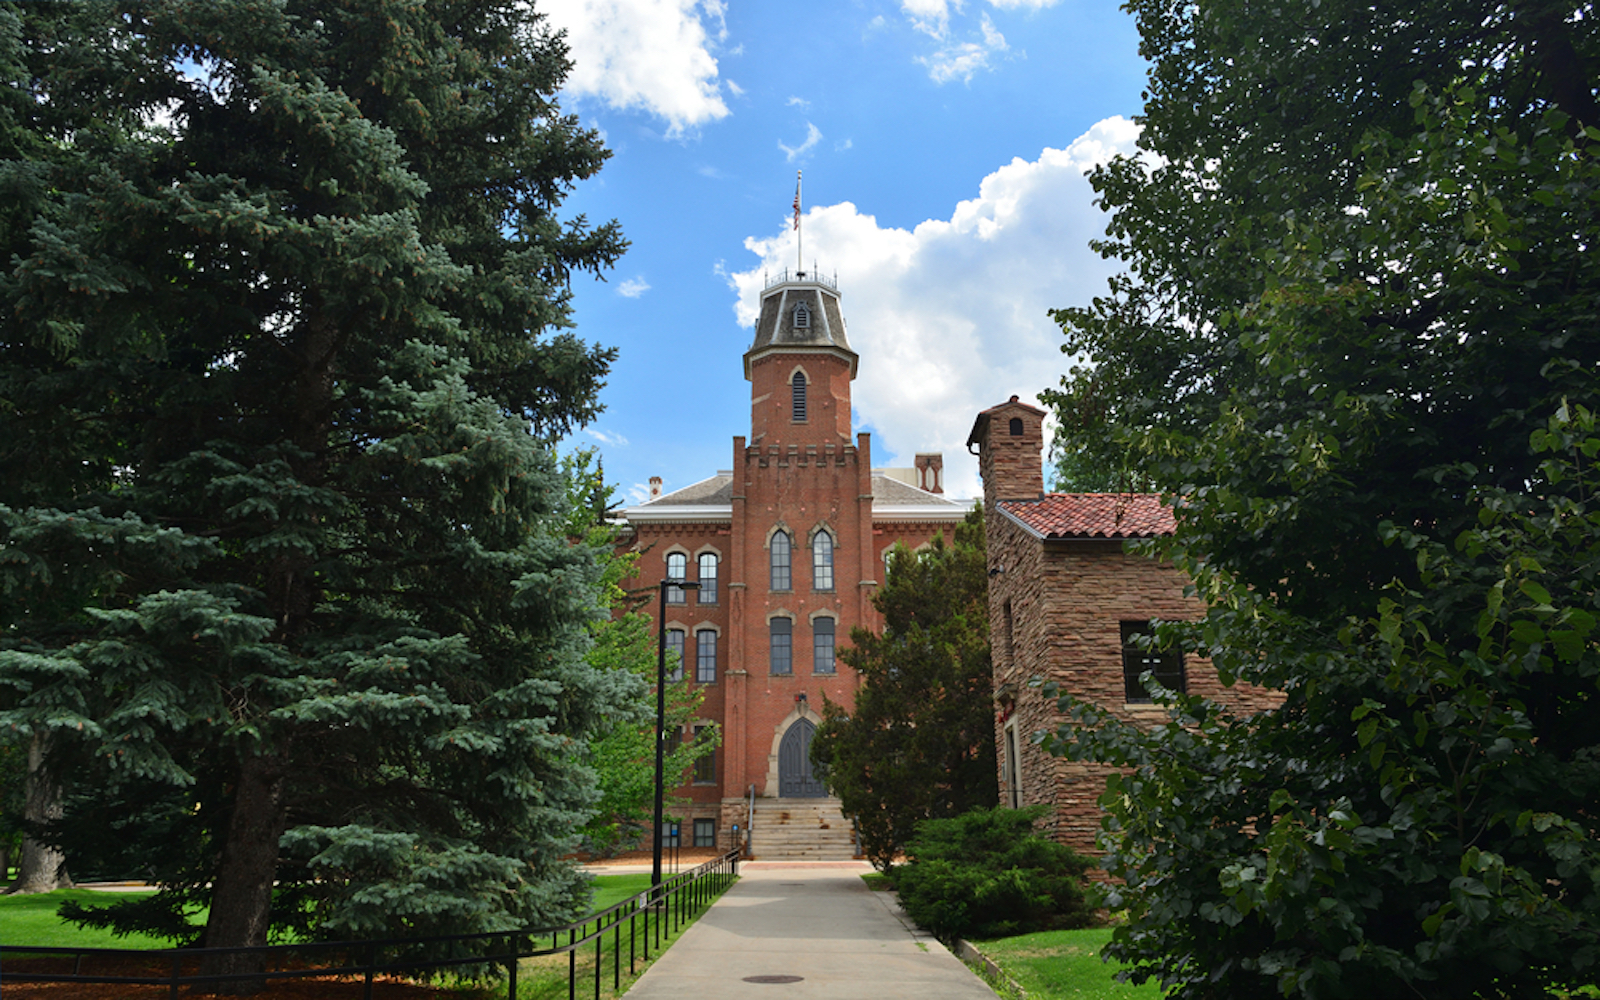  University of Colorado Boulder